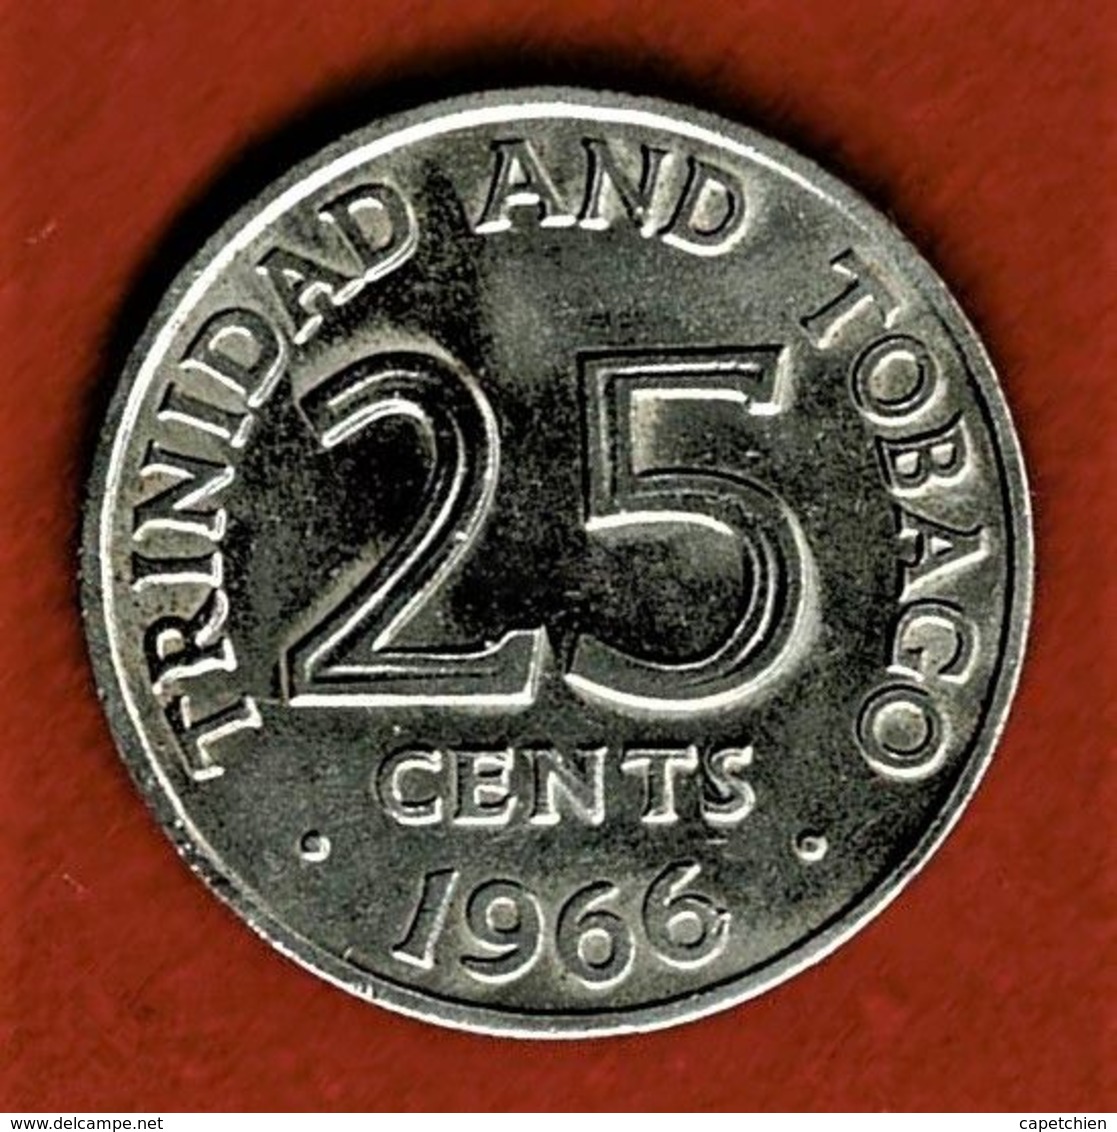 TRINIDAD & TOBAGO / TRINITE & TOBAGO / 25 CENTS / 1966 - Trinidad & Tobago